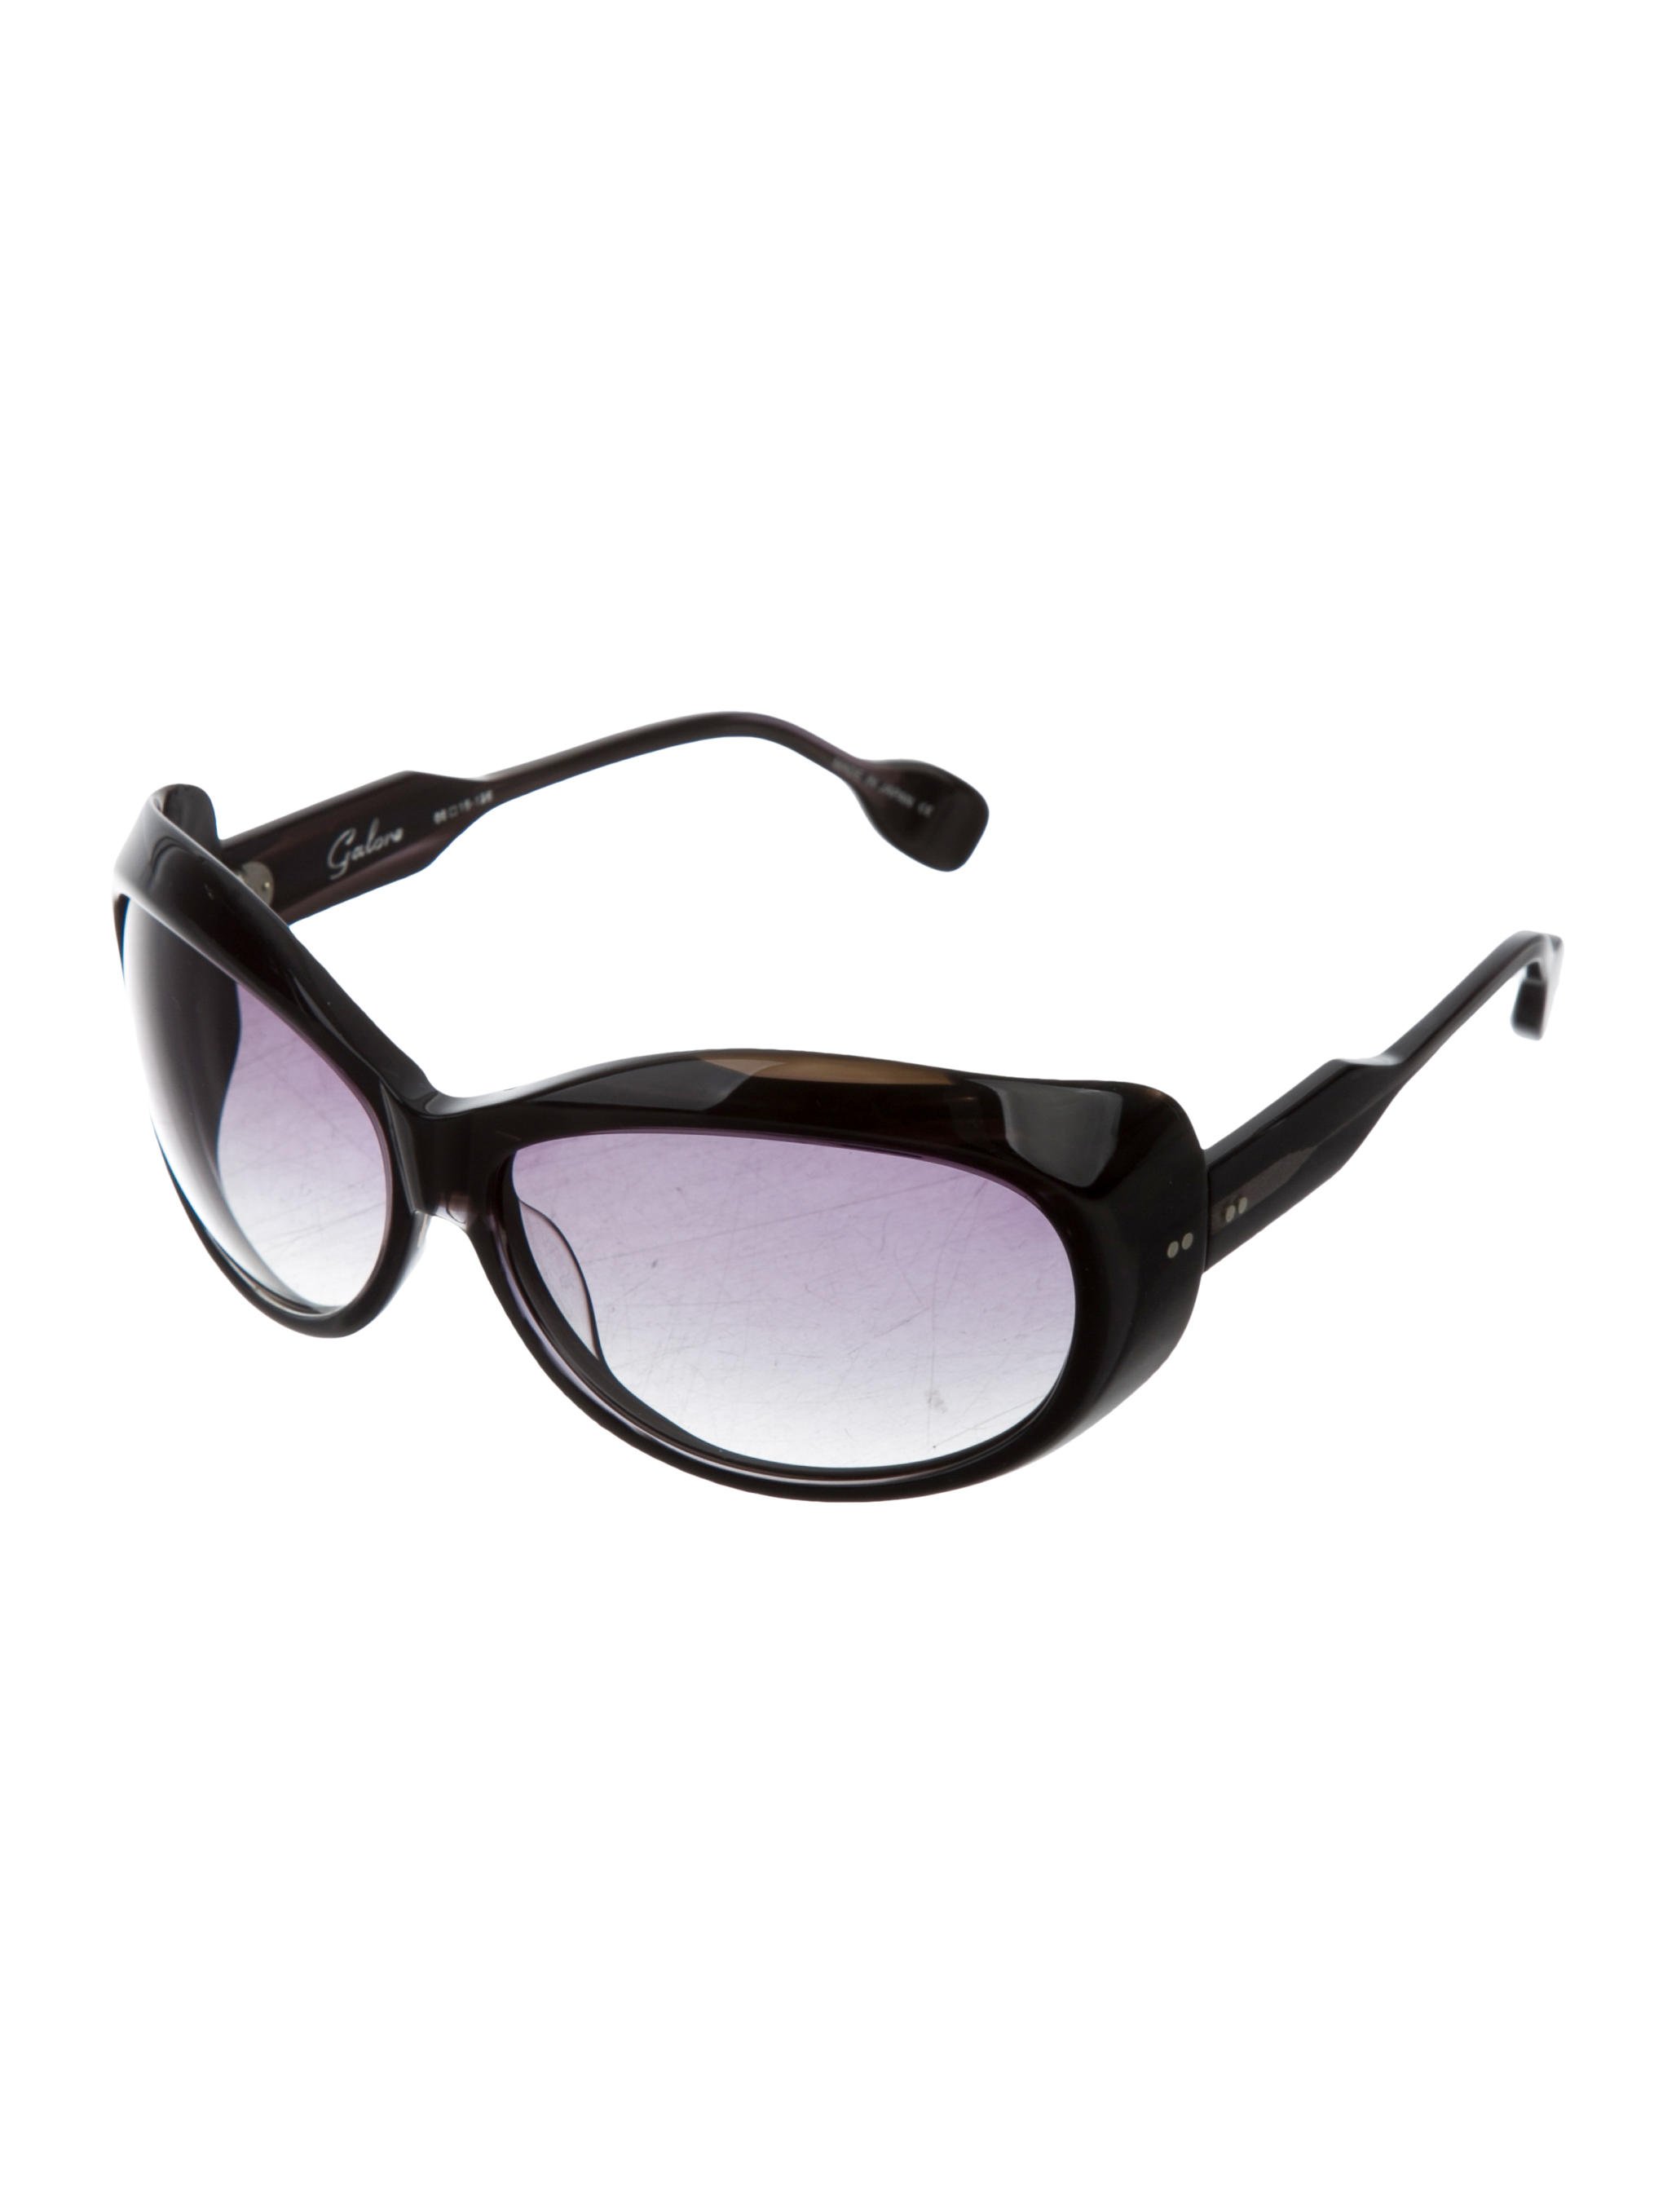 Dita Galore Oversize Sunglasses - Accessories - WDT20527 | The RealReal